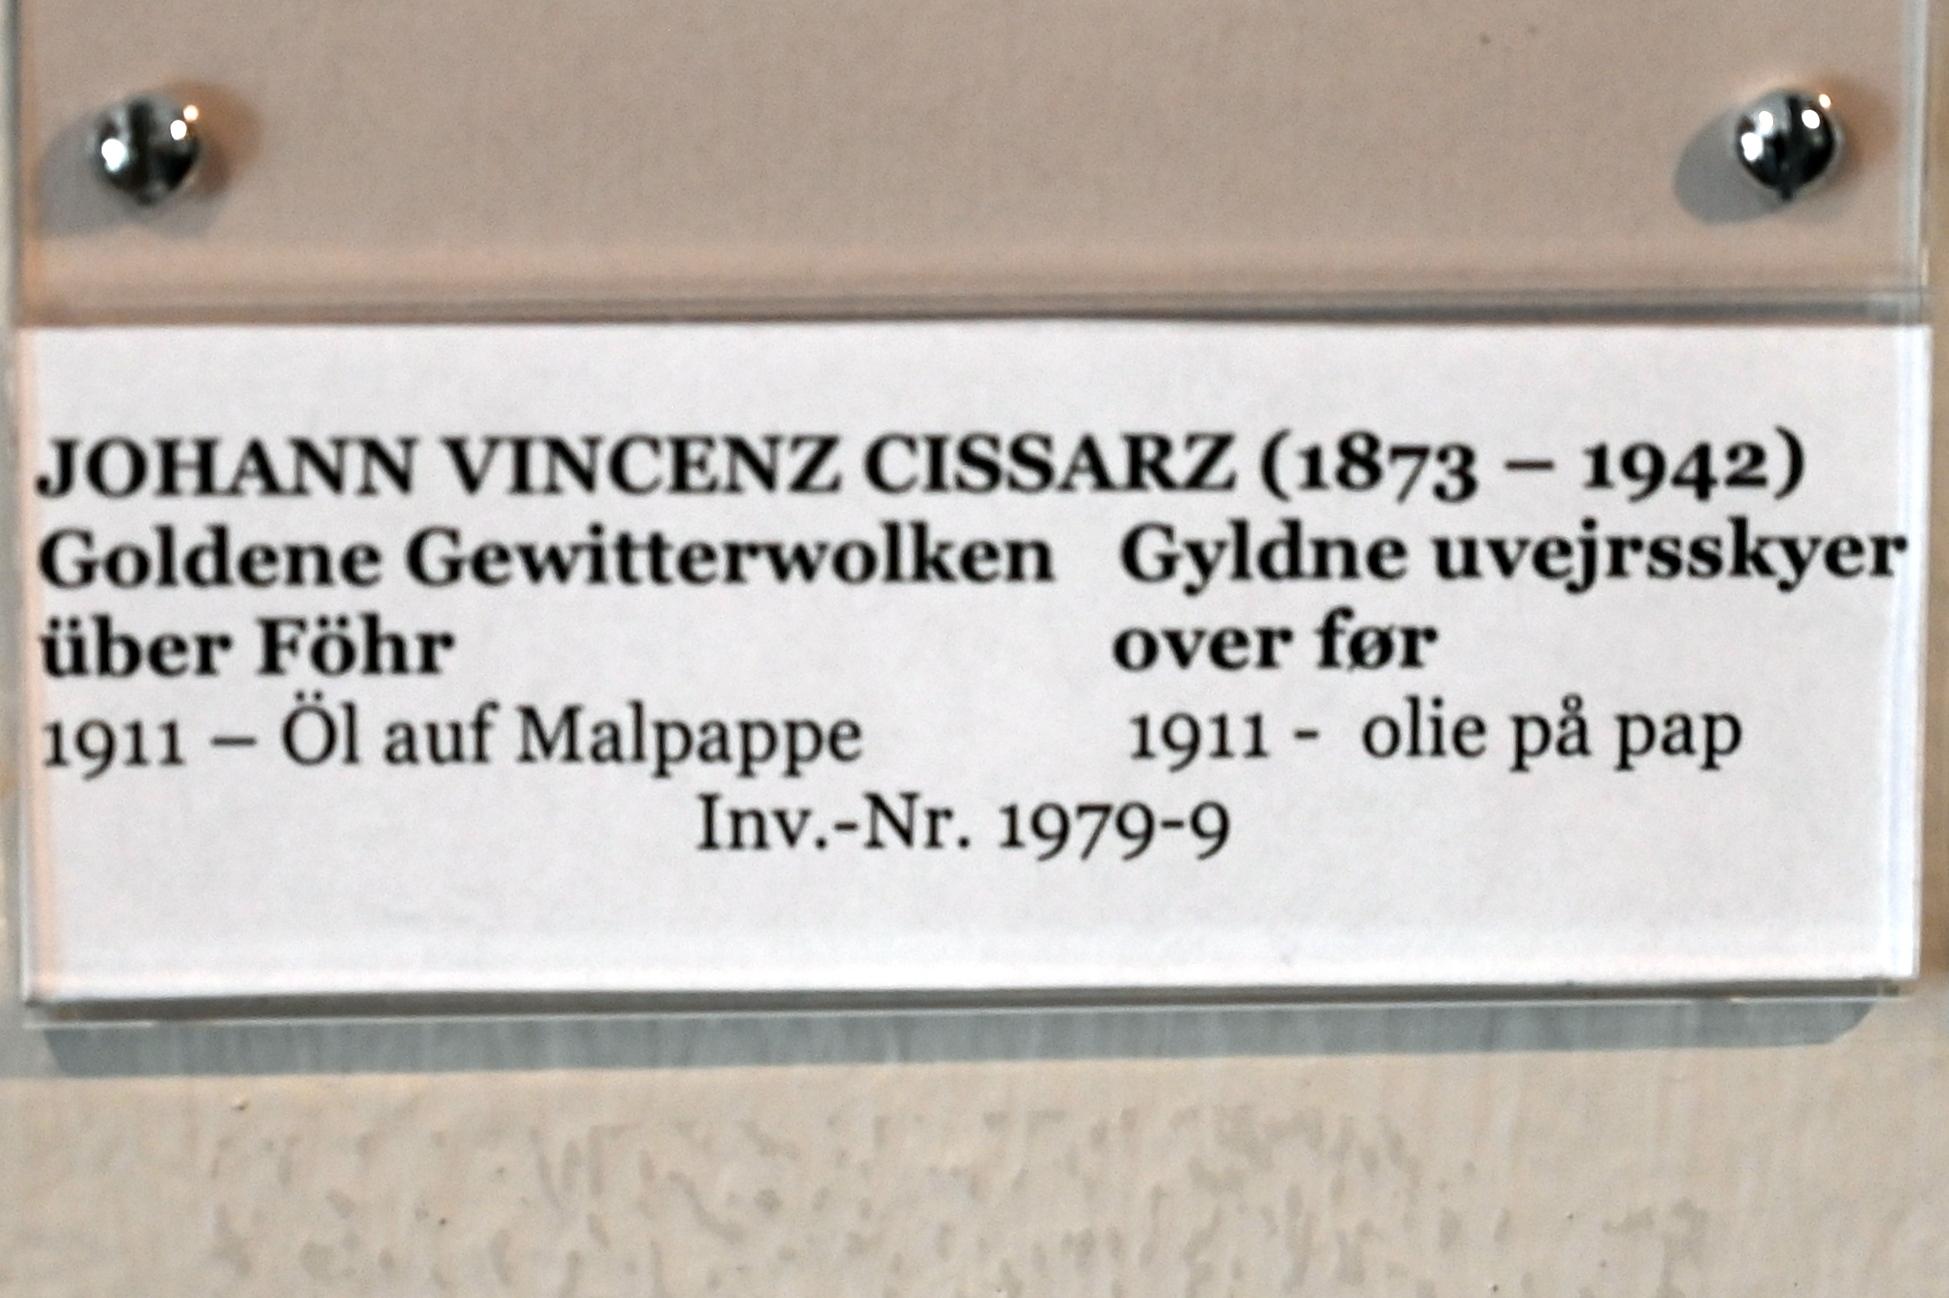 Johann Vincenz Cissarz (1911), Goldene Gewitterwolken über Föhr, Schleswig, Landesmuseum für Kunst und Kulturgeschichte, Jugendstil, 1911, Bild 2/2